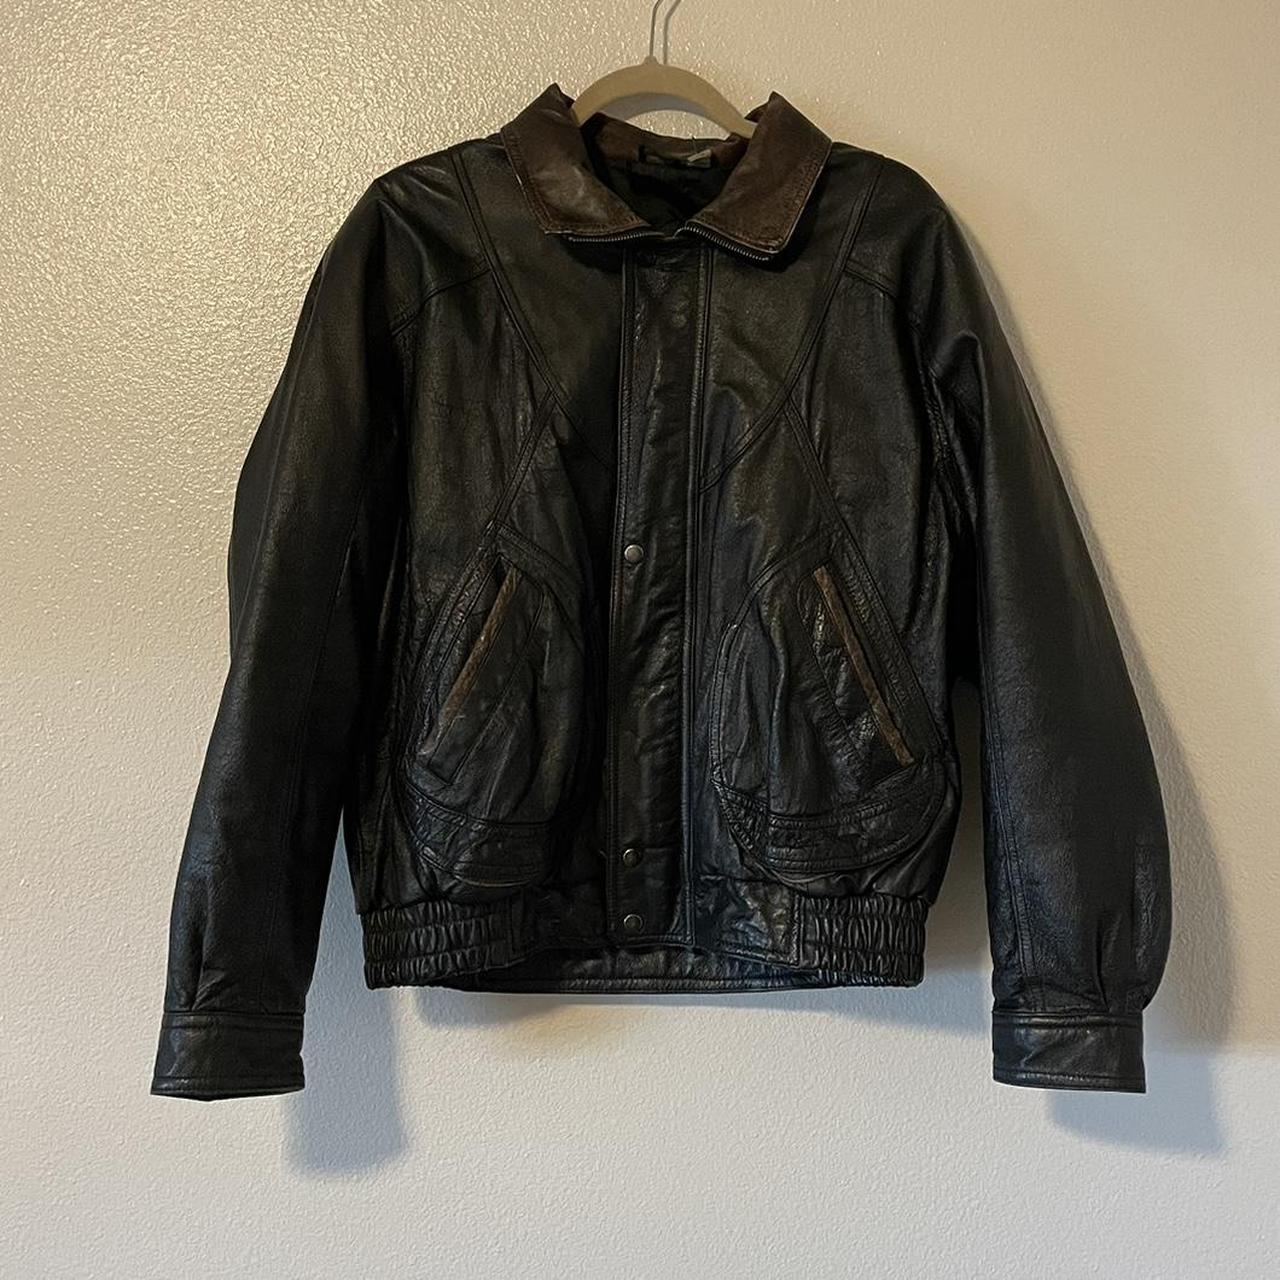 Vintage Black Leather Jacket Mens large. In really... - Depop